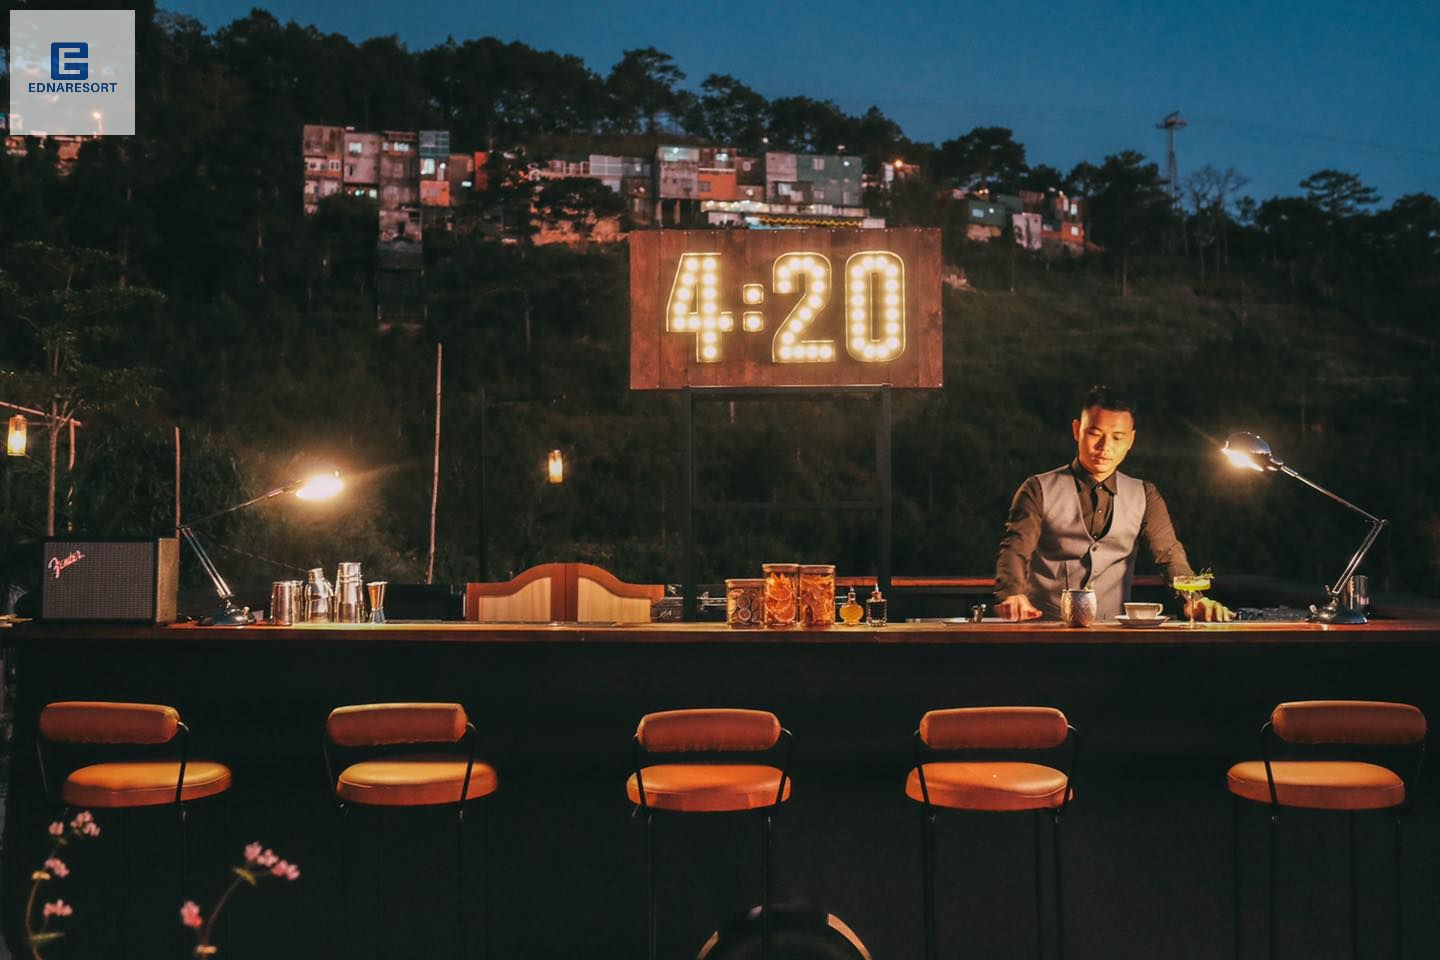  4:20 Sunset Cocktail Bar Dalat 